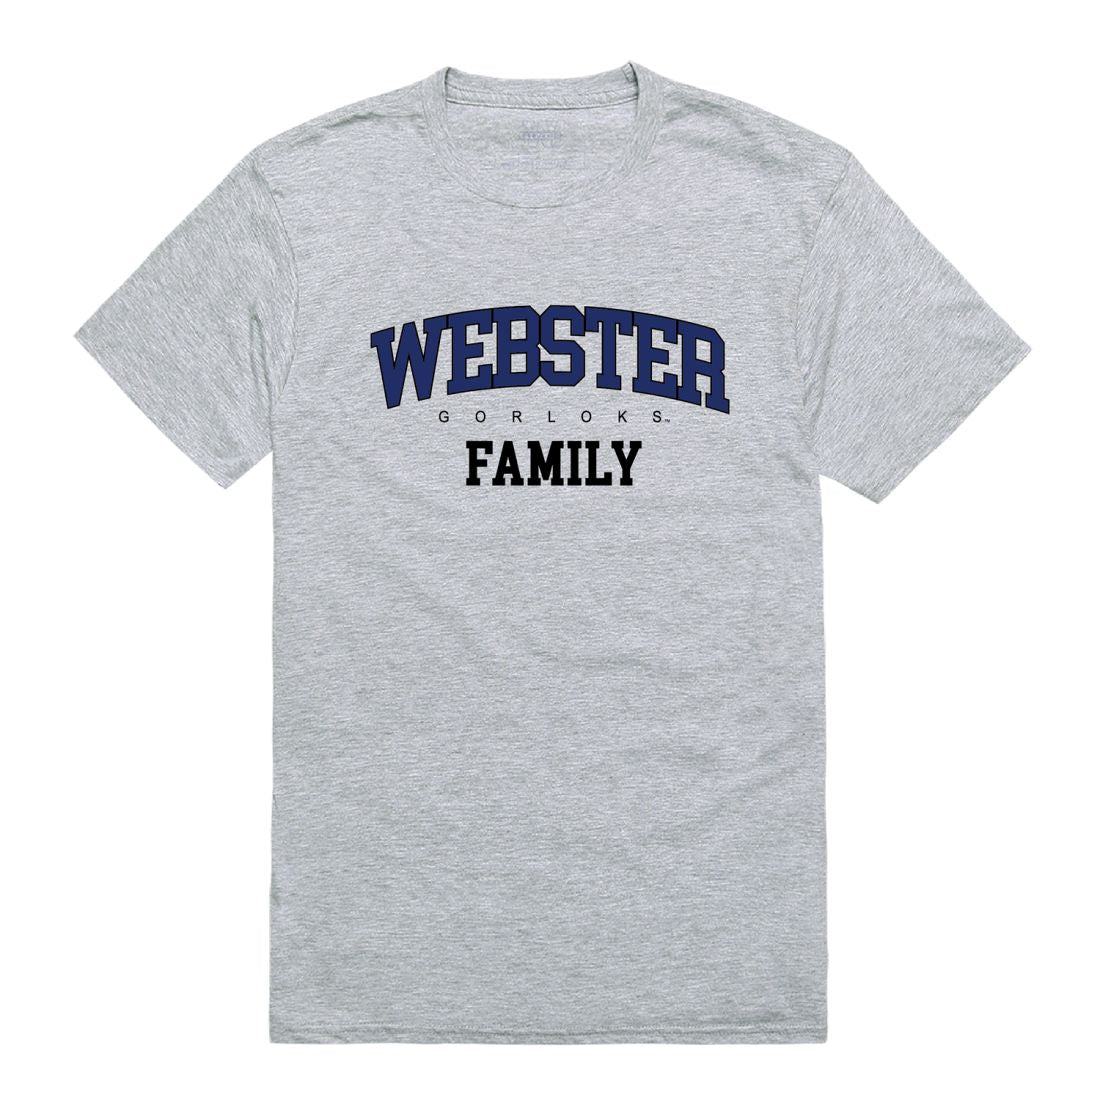 Webster University Gorlocks Family T-Shirt